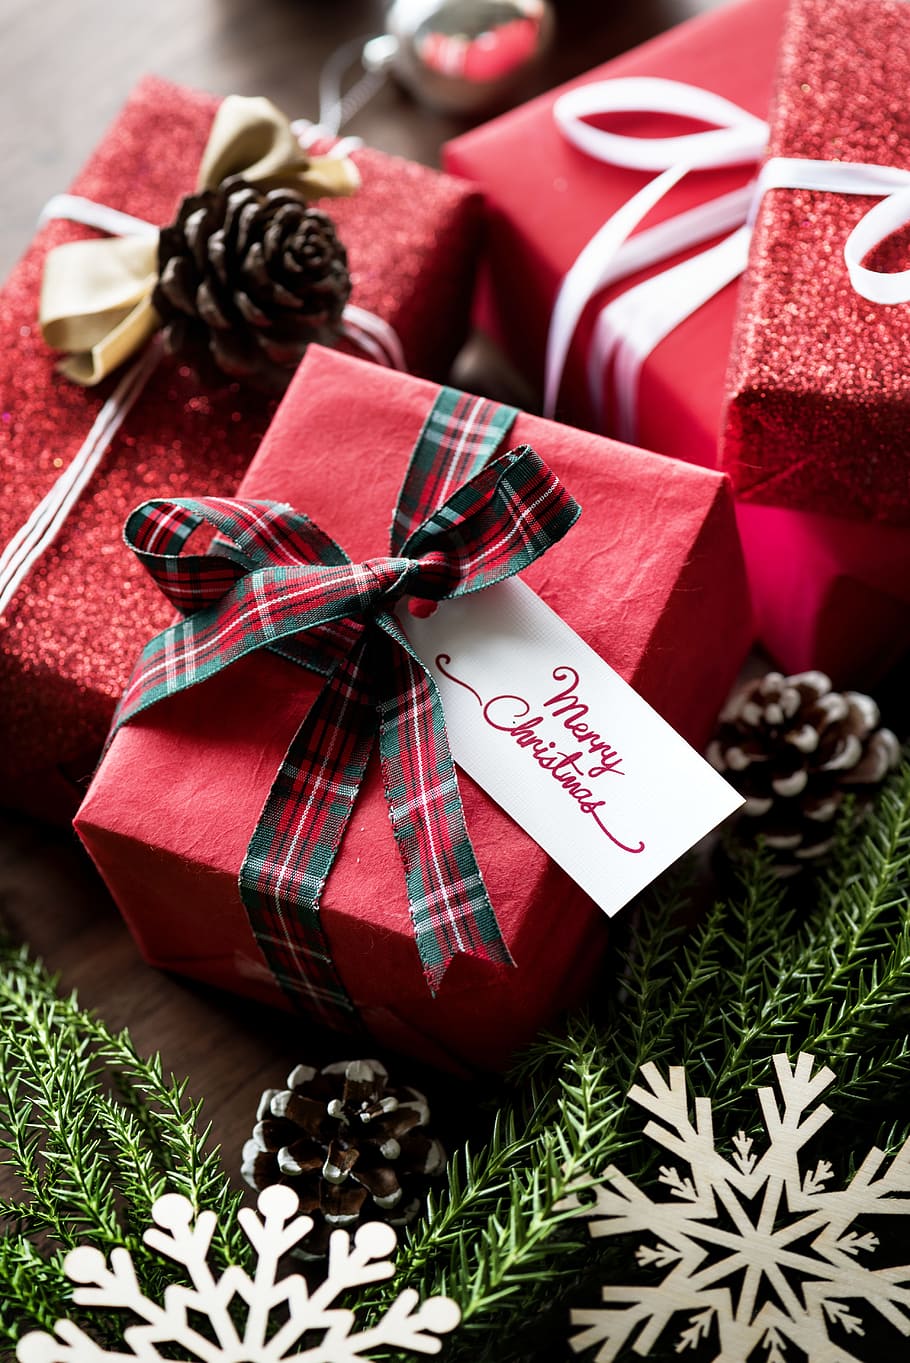 empat, merah, kotak hadiah, kotak, kartu, rayakan, perayaan, natal, hiasi, dekorasi